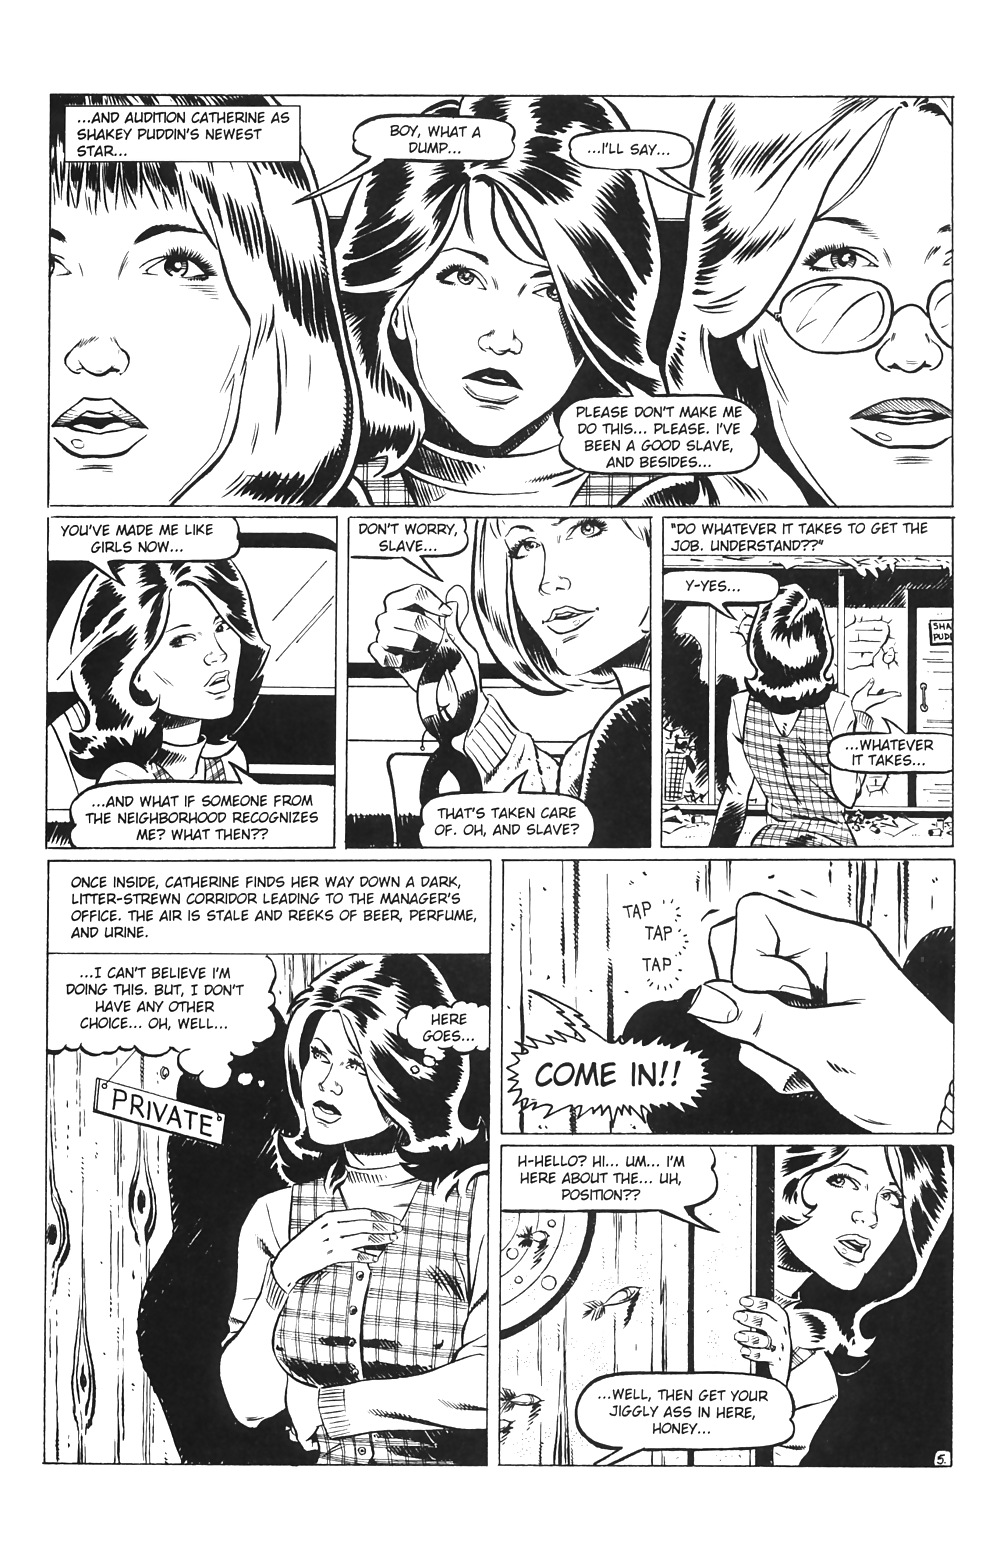 Ménagères En Jeu # 03 - Comics Eros Par Rebecca - Octobre 2001 #25713932